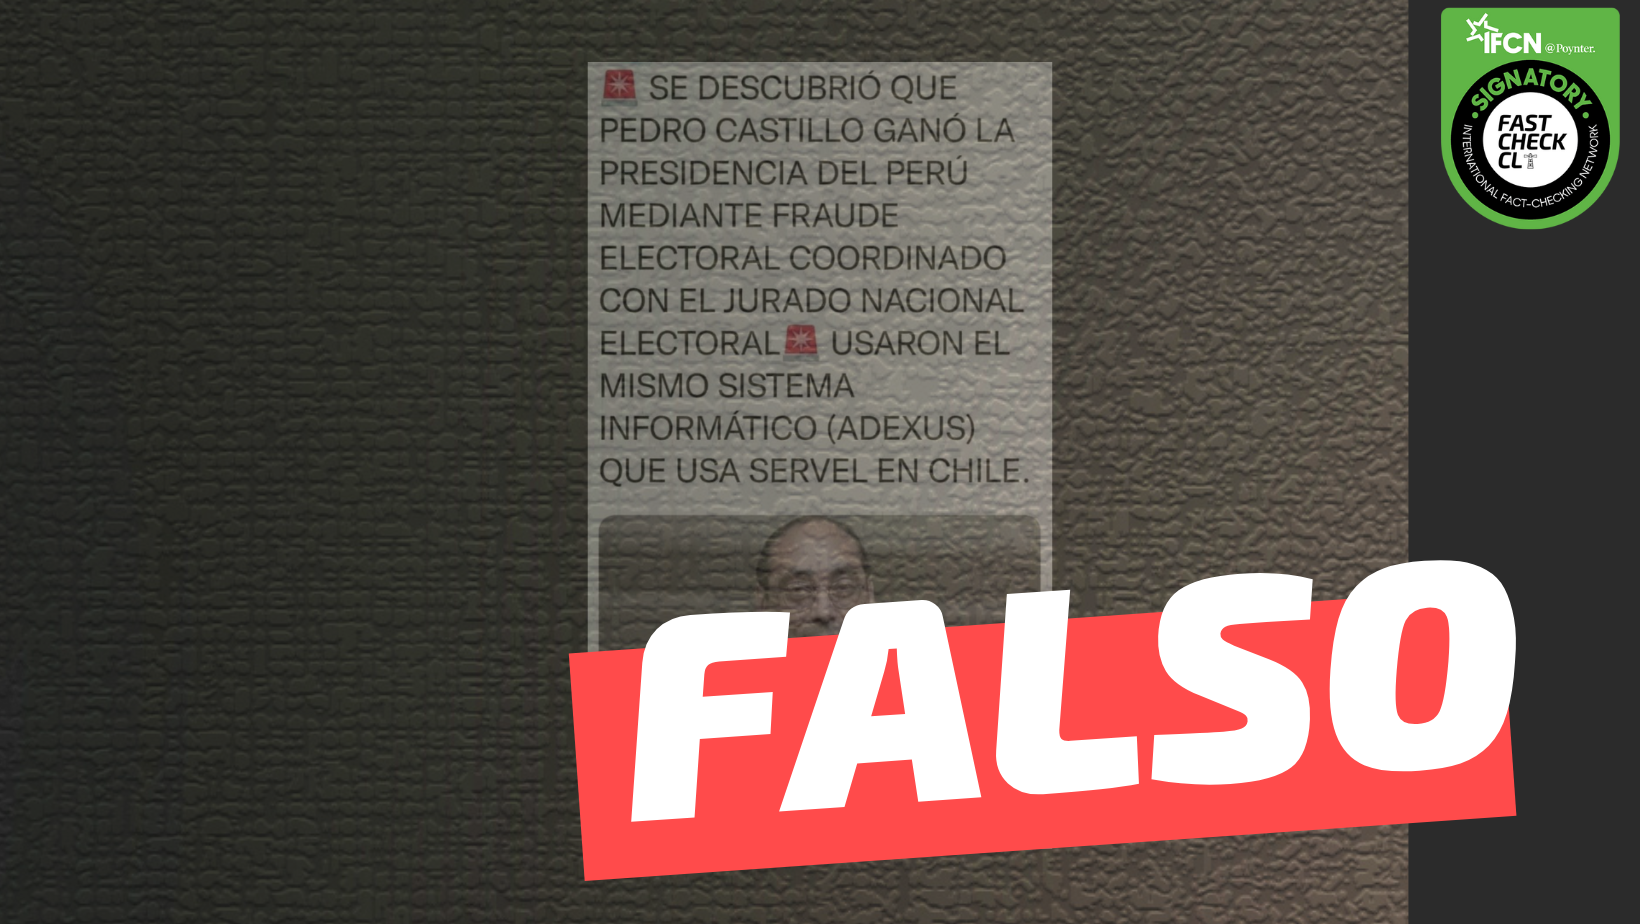 You are currently viewing “Se descrubriÃ³ que Pedro Castillo ganÃ³ la presidencia del PerÃº mediante fraude electoral coordinado con el Jurado Nacional. Usaron el mismo sistema informÃ¡tico (Adexus) que usa el Servel en Chile”: #Falso